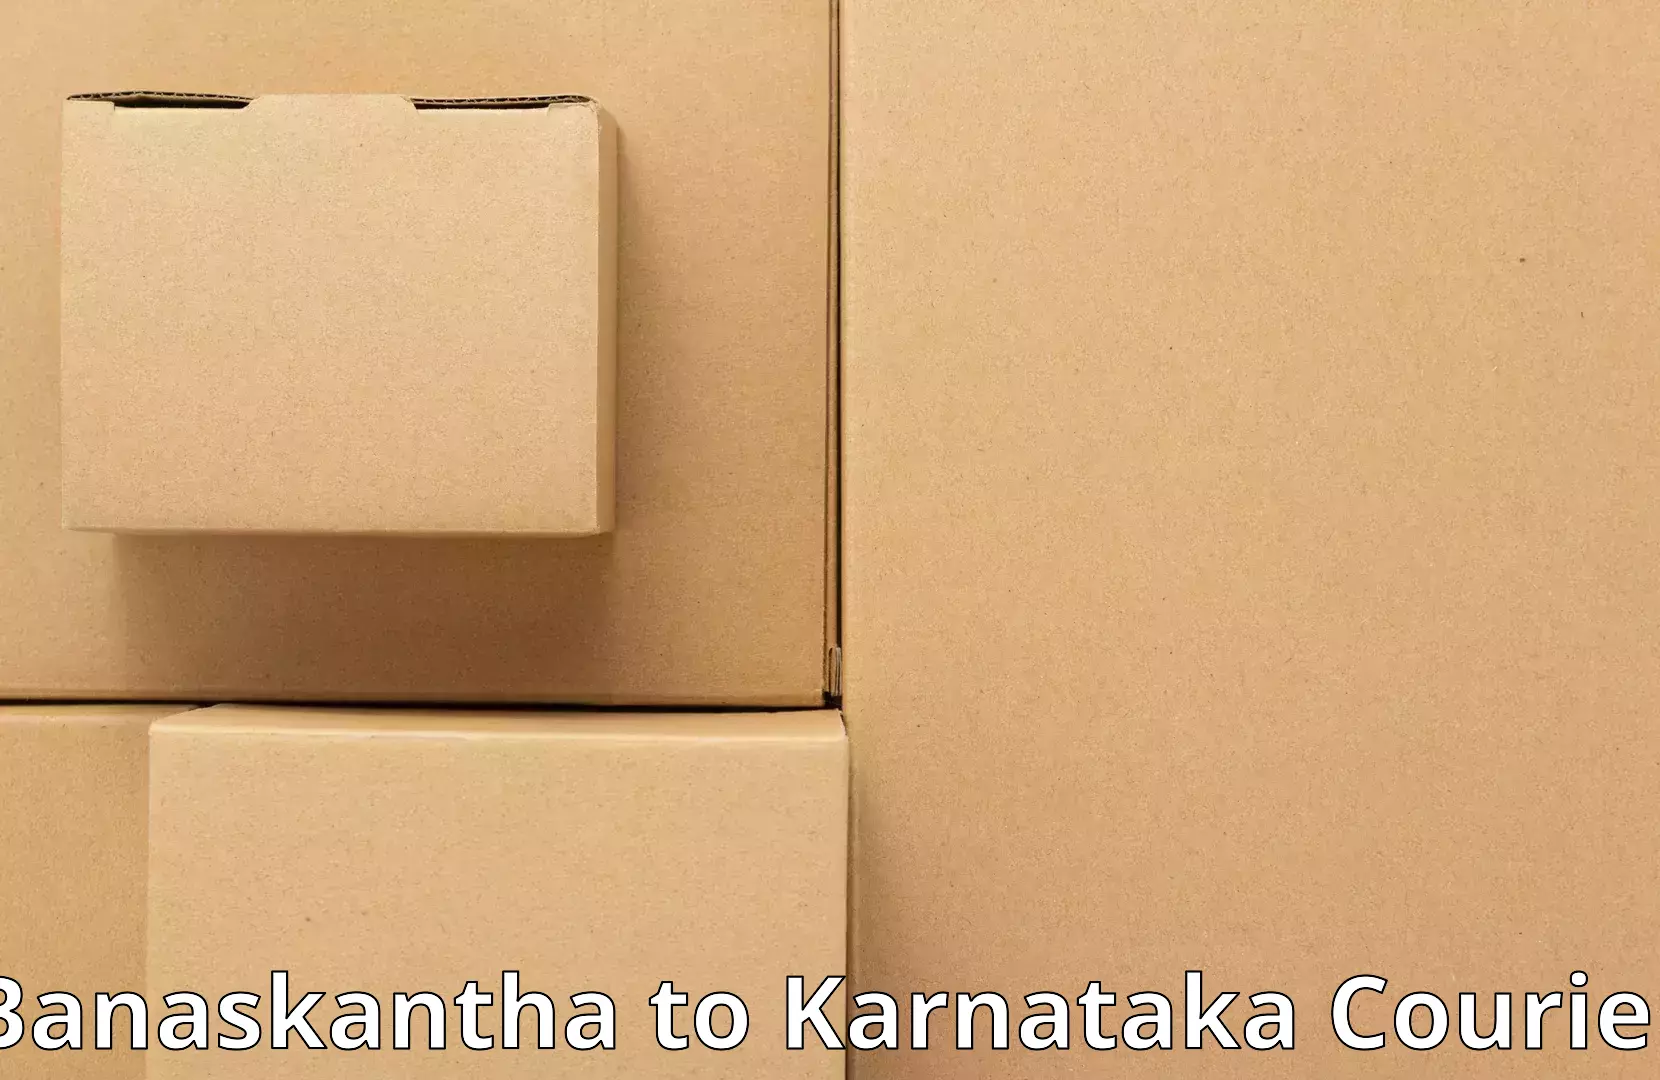 Furniture transport experts Banaskantha to Malur